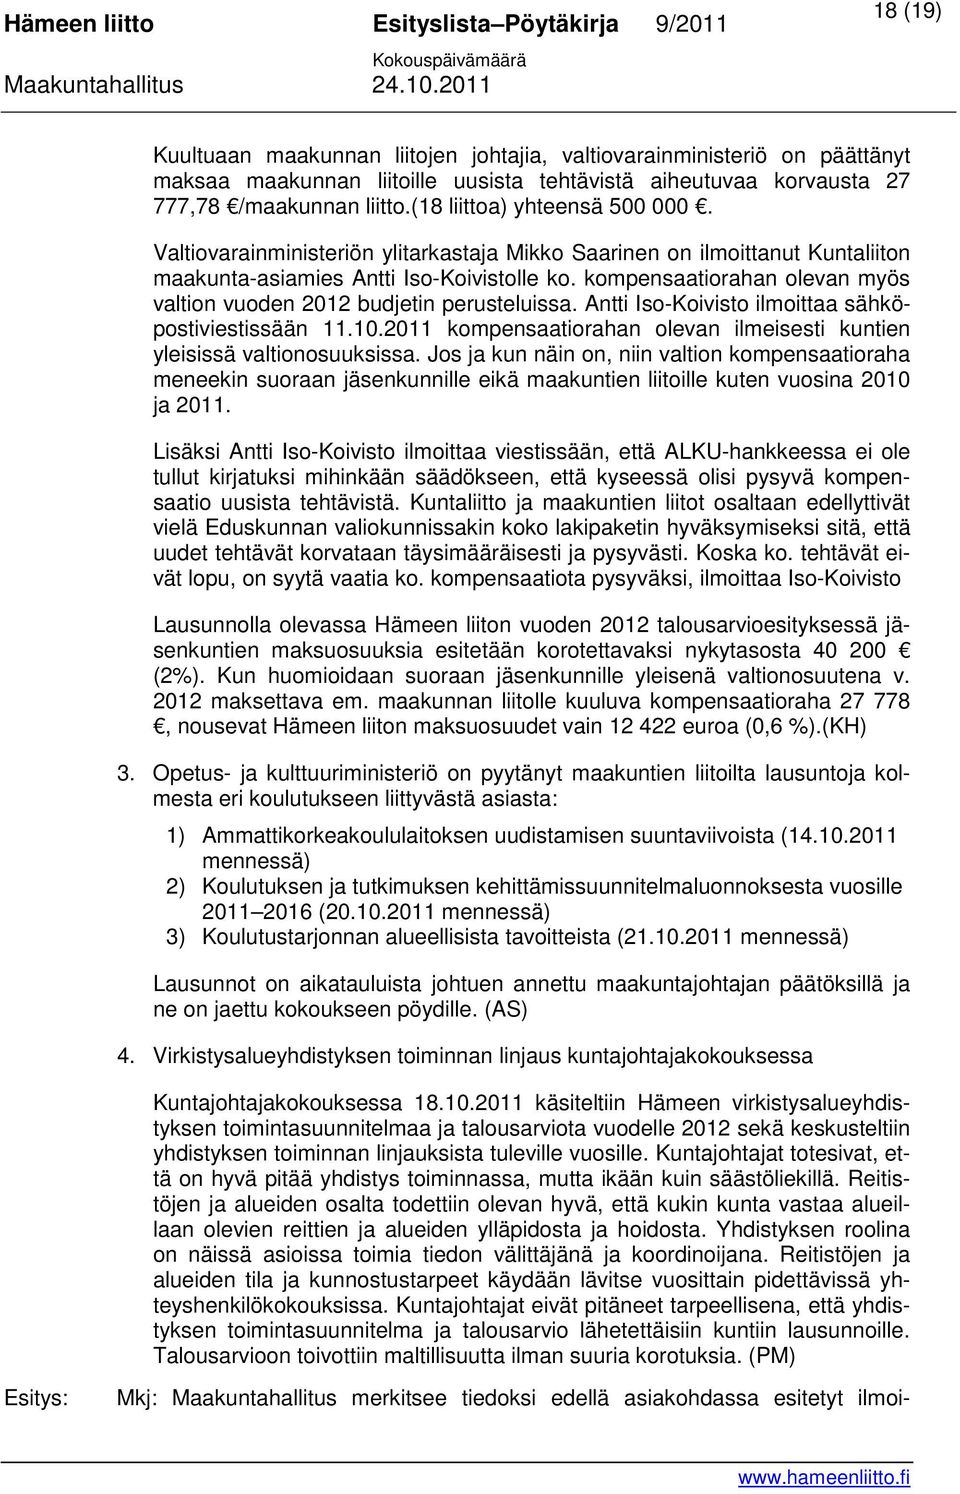 kompensaatiorahan olevan myös valtion vuoden 2012 budjetin perusteluissa. Antti Iso-Koivisto ilmoittaa sähköpostiviestissään 11.10.